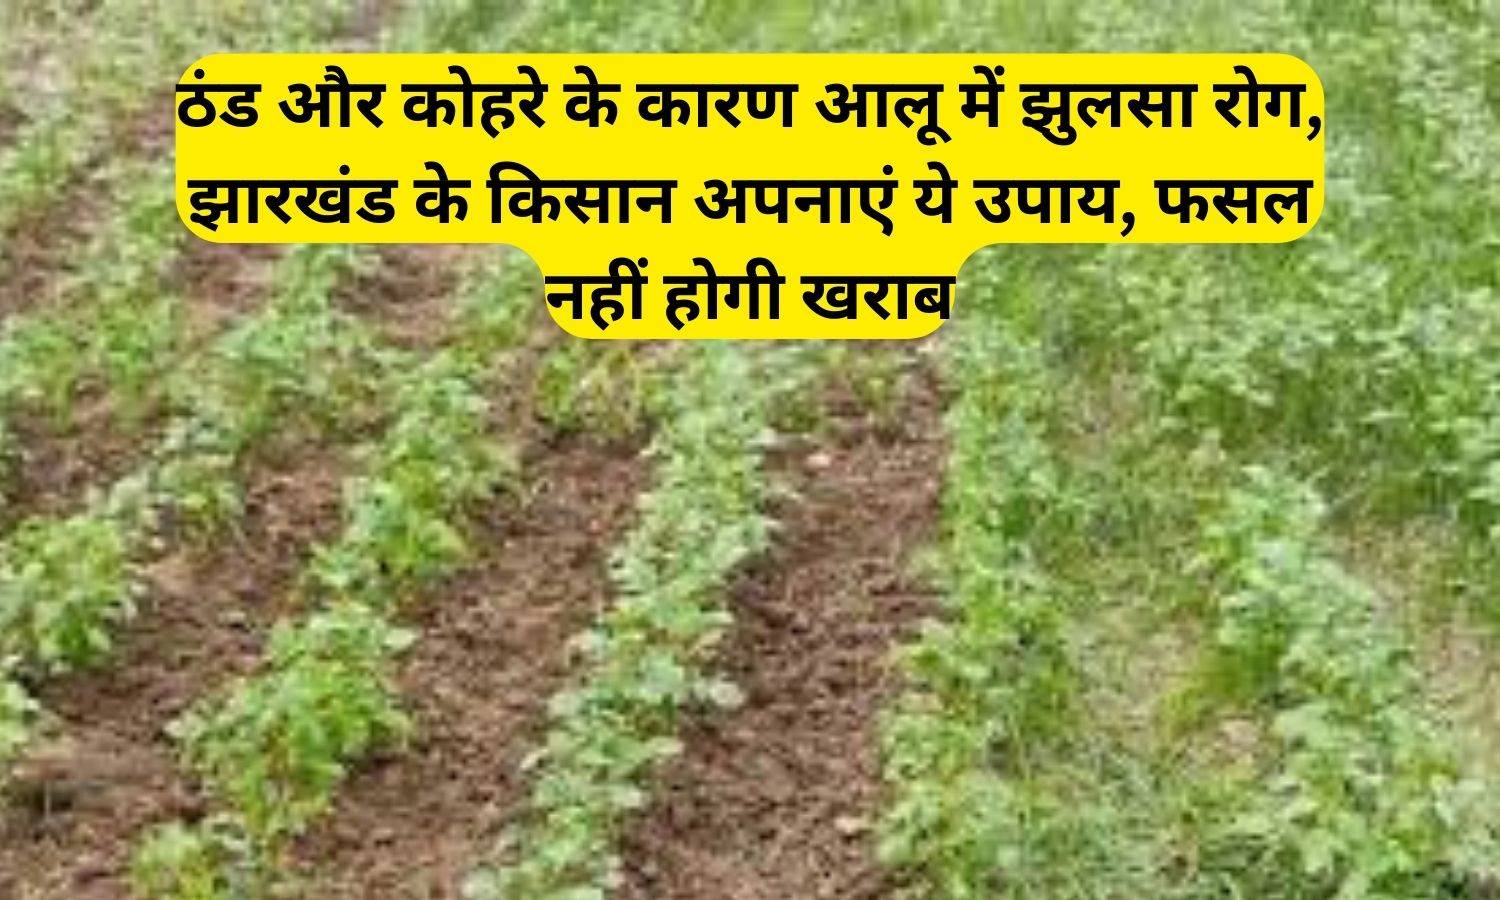 Scald disease in potatoes: ठंड और कोहरे के कारण आलू में झुलसा रोग, झारखंड के किसान अपनाएं ये उपाय, फसल नहीं होगी खराब